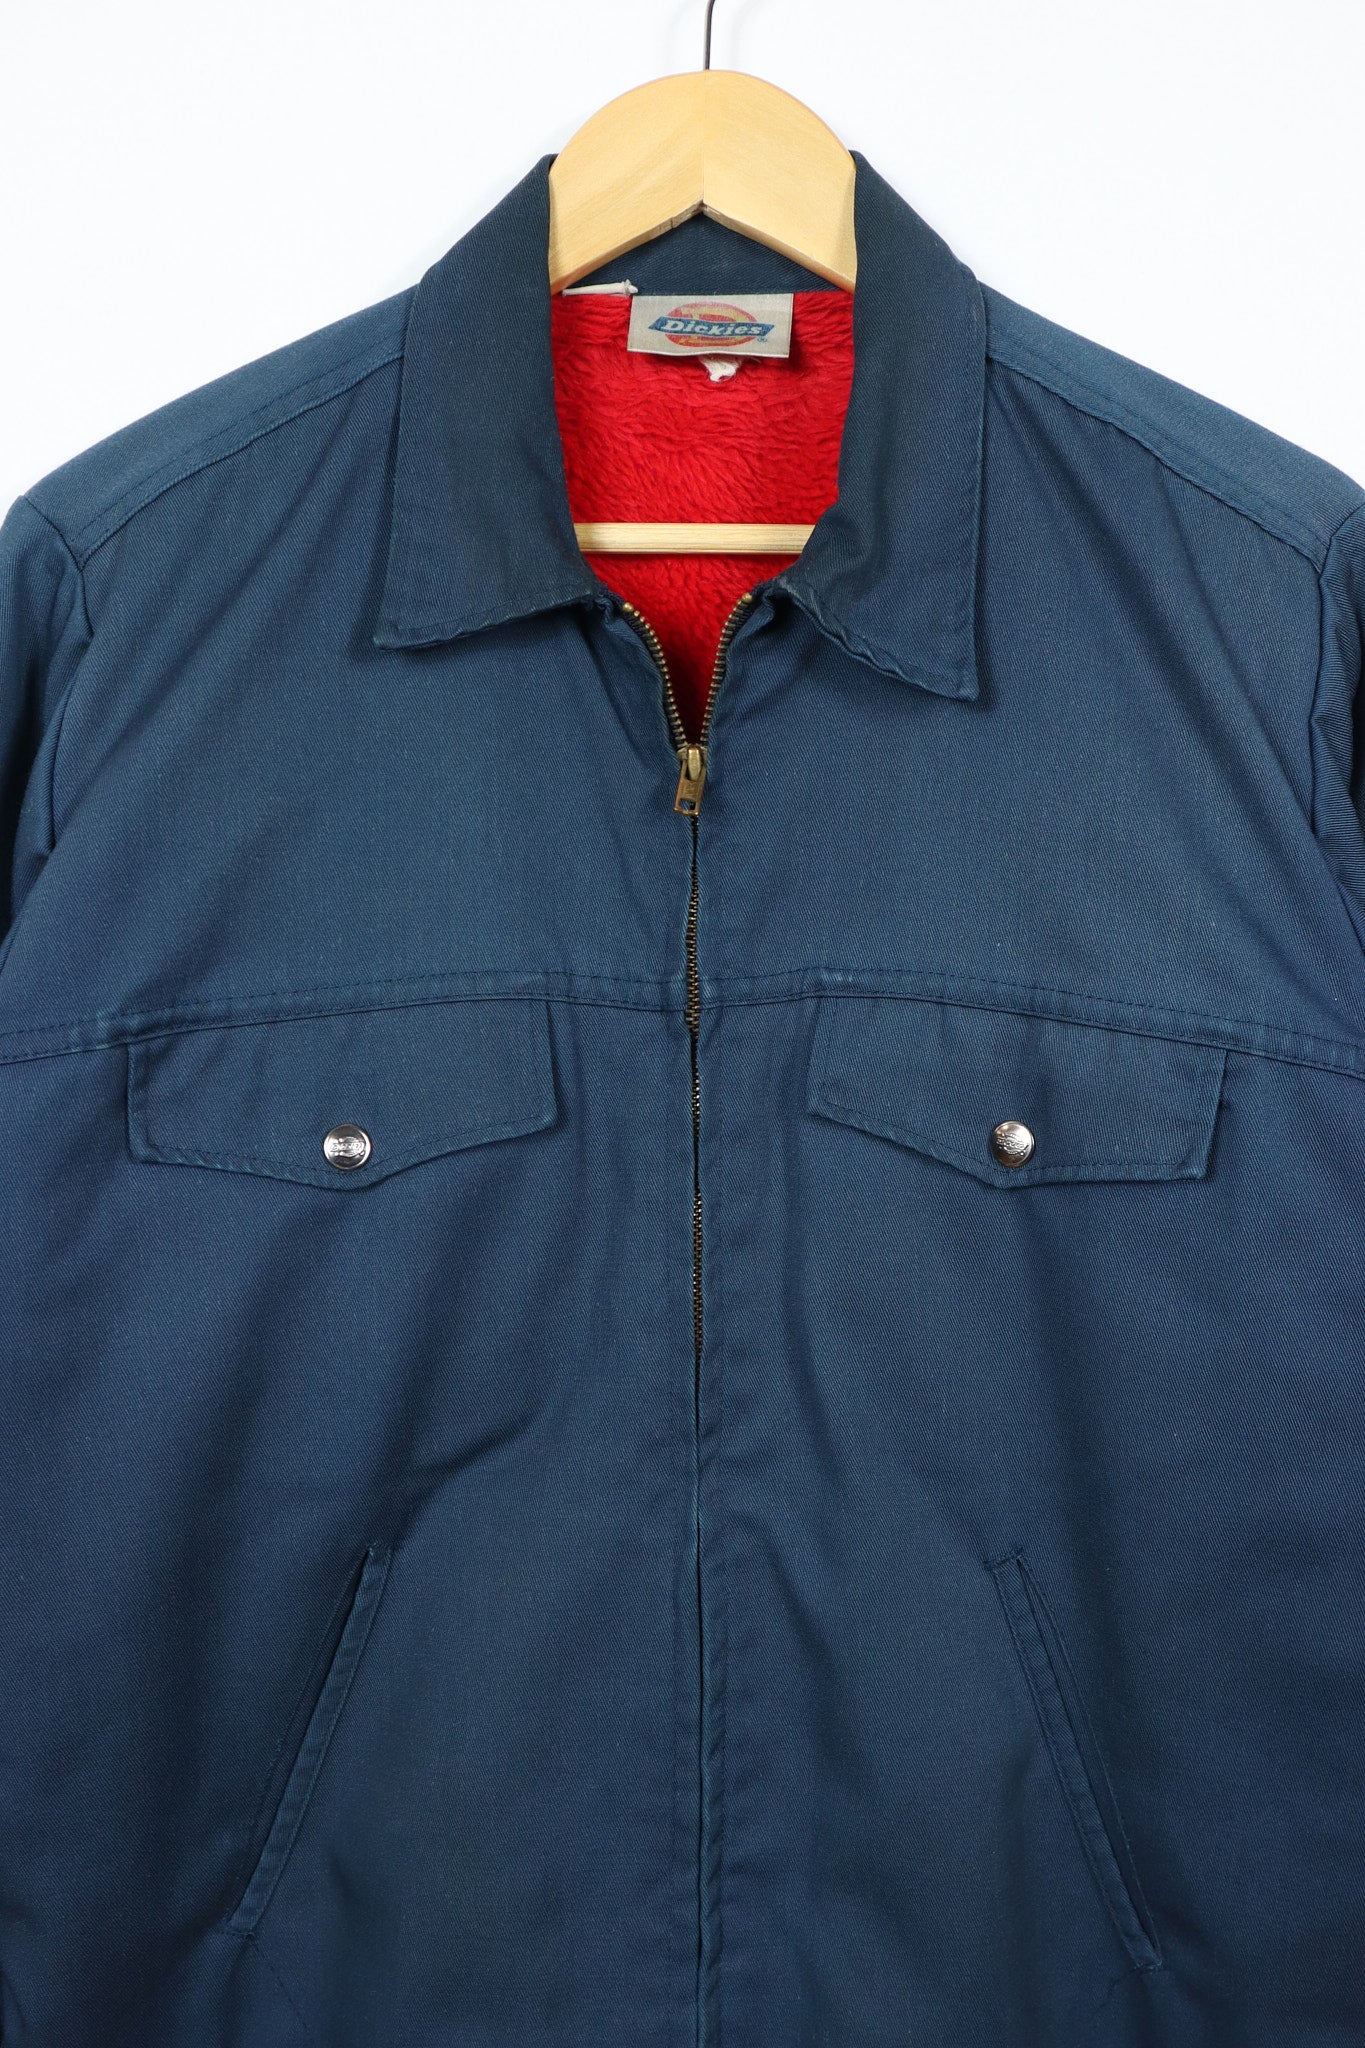 Vintage Dickies Red Sherpa Lined Full Zip Jacket